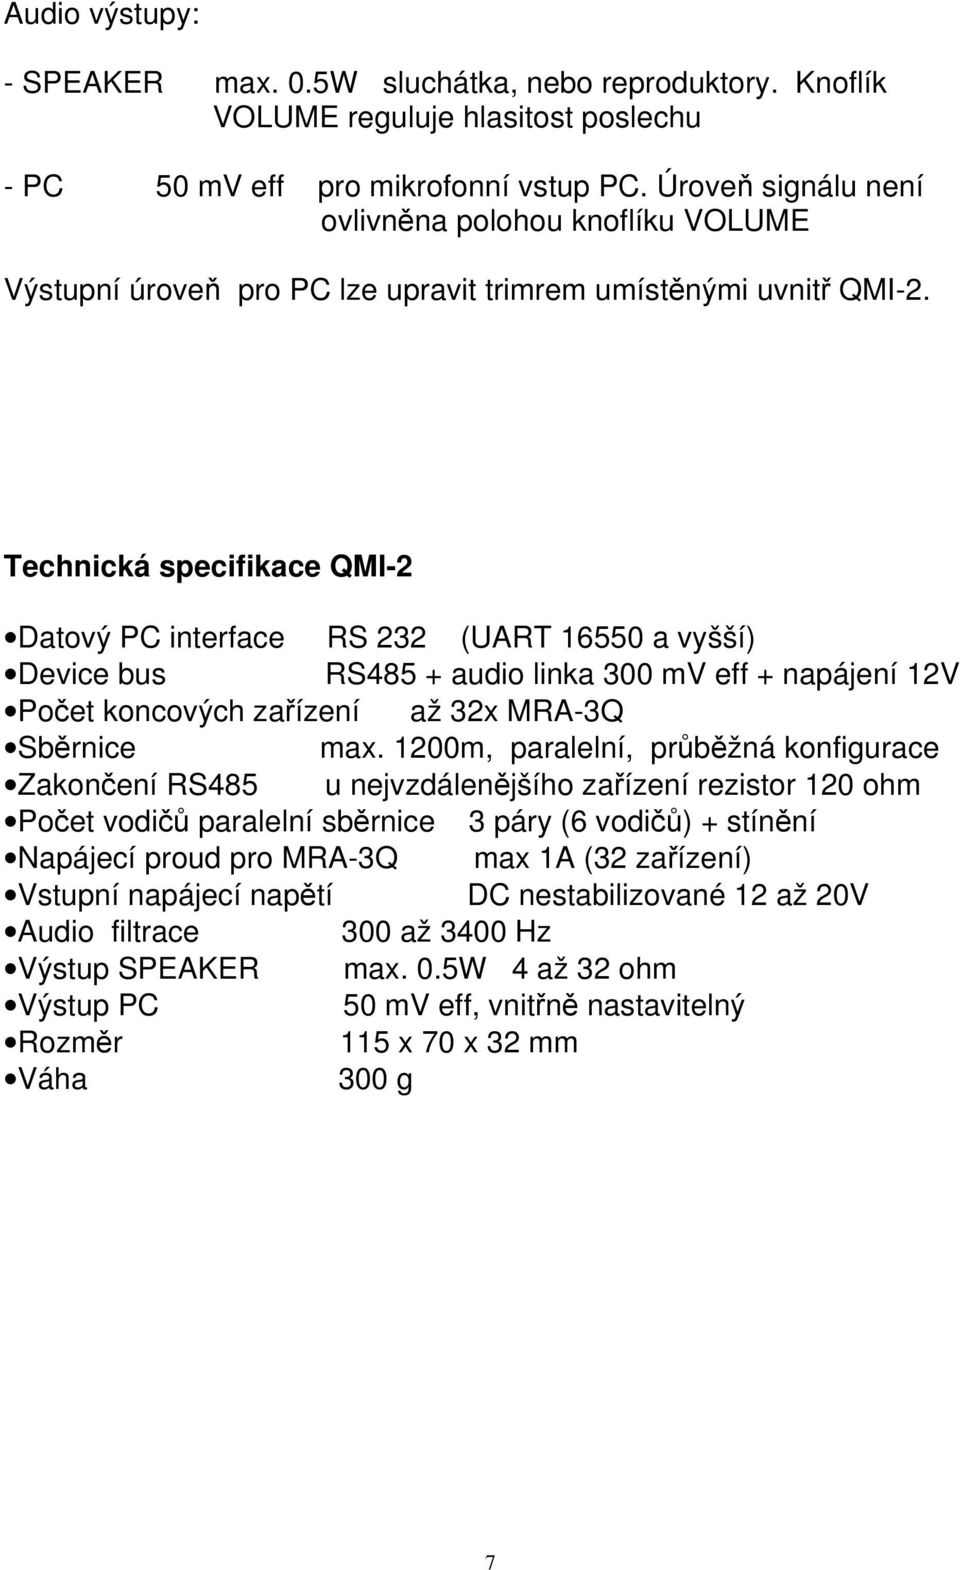 Technická specifikace QMI-2 Datový PC interface RS 232 (UART 16550 a vyšší) Device bus RS485 + audio linka 300 mv eff + napájení 12V Počet koncových zařízení až 32x MRA-3Q Sběrnice max.